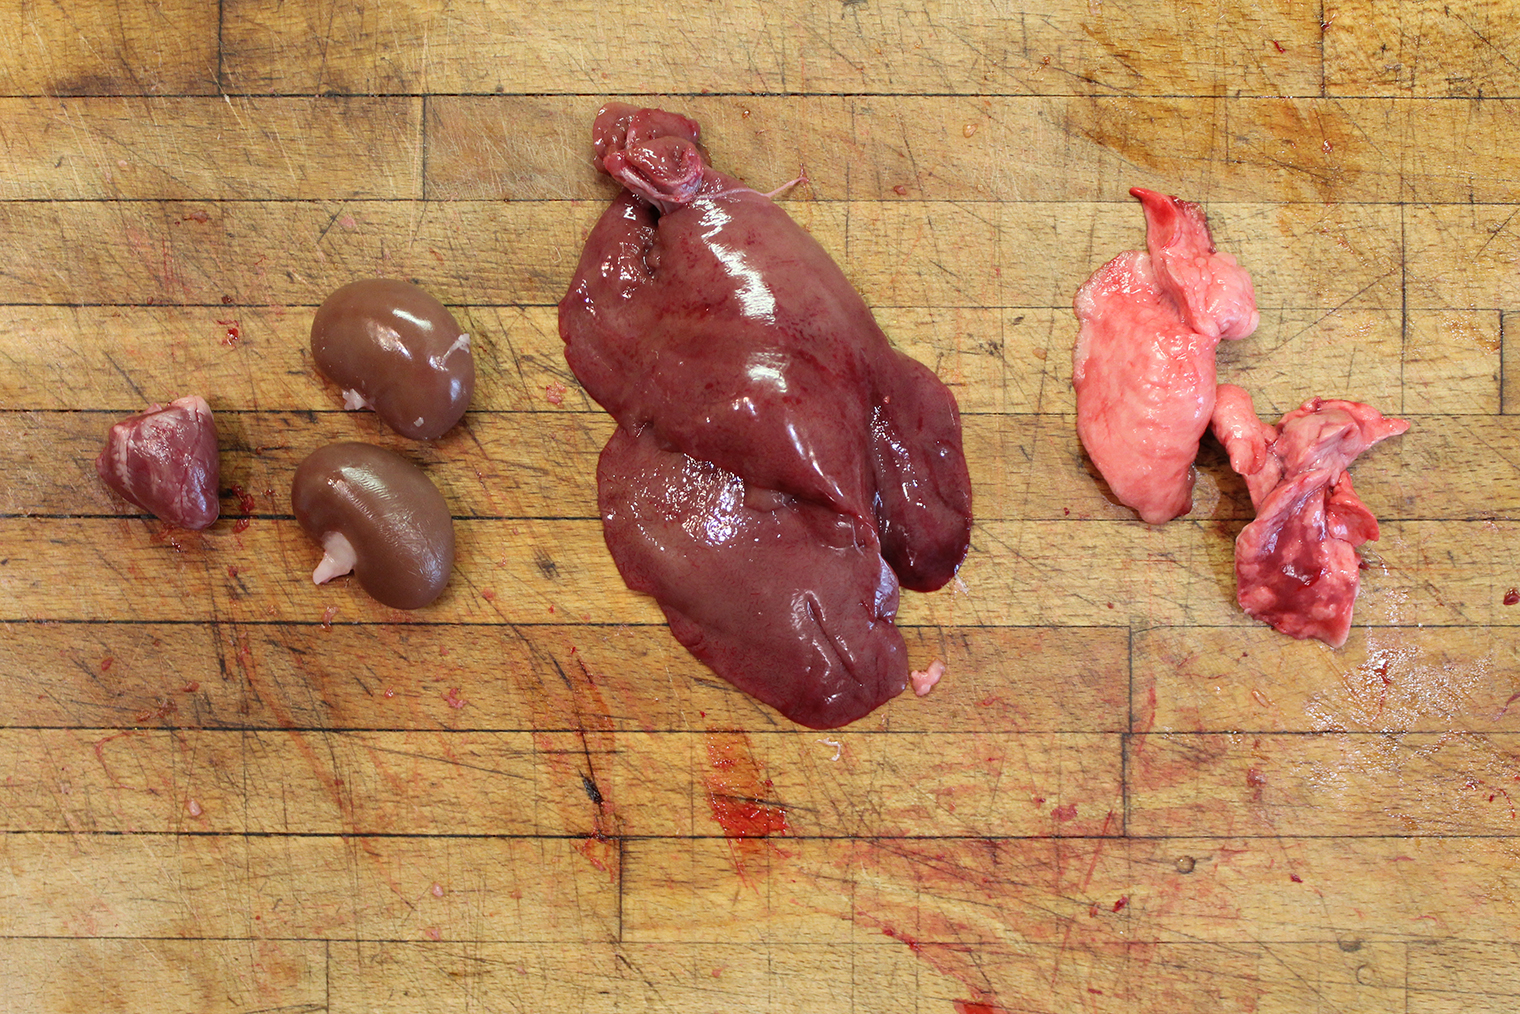 Субпродукты из кролика: сердце, почки, печень, легкие. На фото видно, что все они, в том числе печень, свежие: яркие, блестящие и эластичные